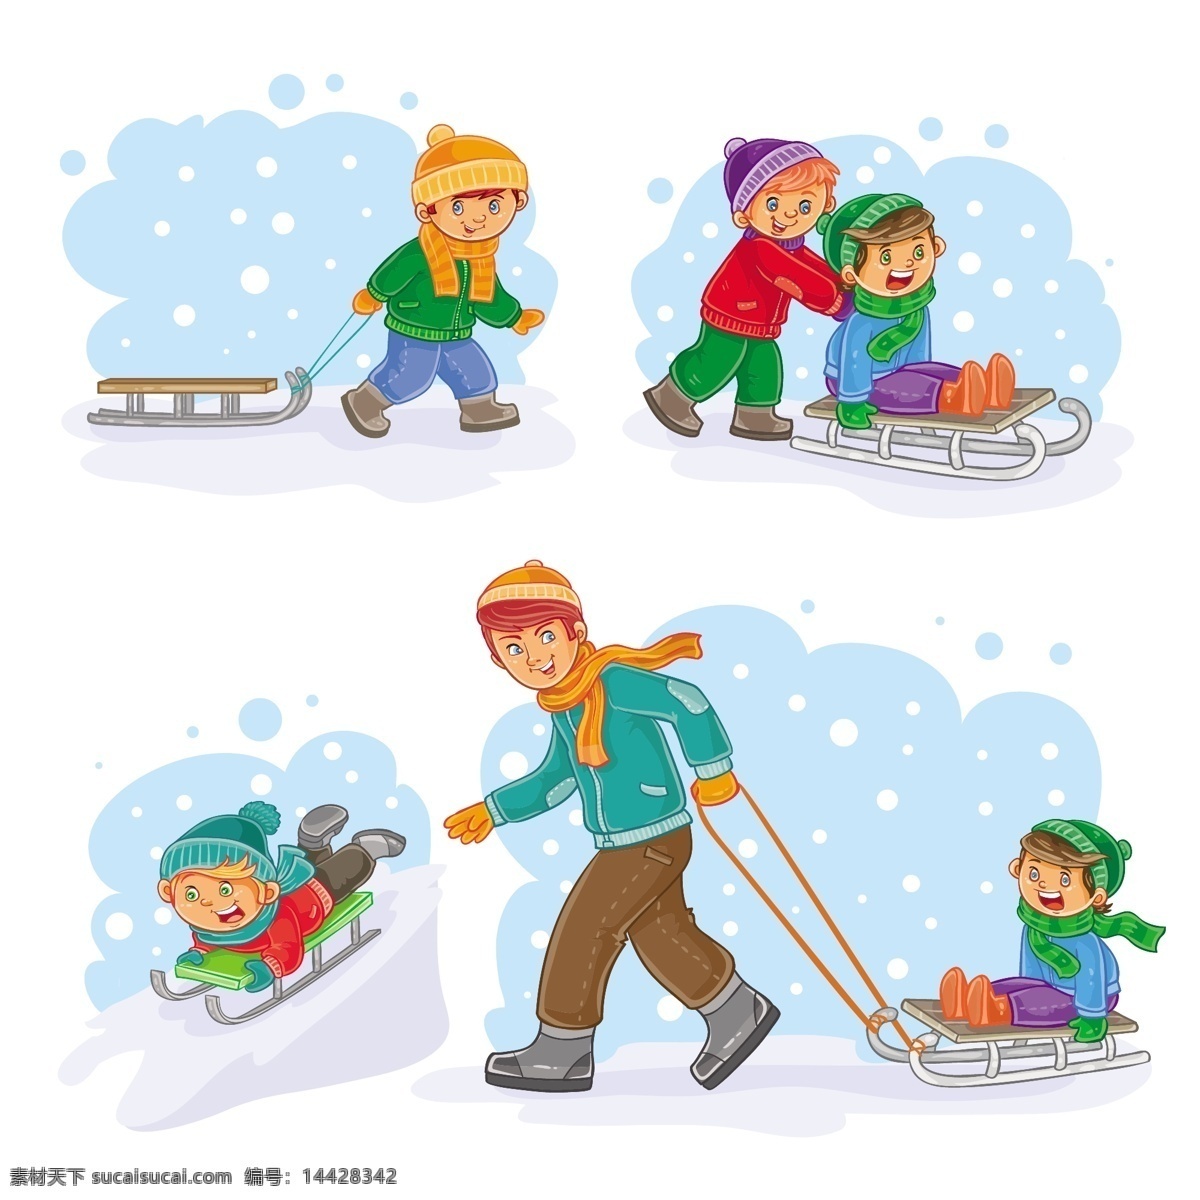 冬季 滑雪 玩耍 卡通 人物 集合 冬天 寒冷 帽子 棉衣 雪橇 孩子 父子 可爱 卡通男孩 儿童插图 动漫 动漫动画 动漫人物